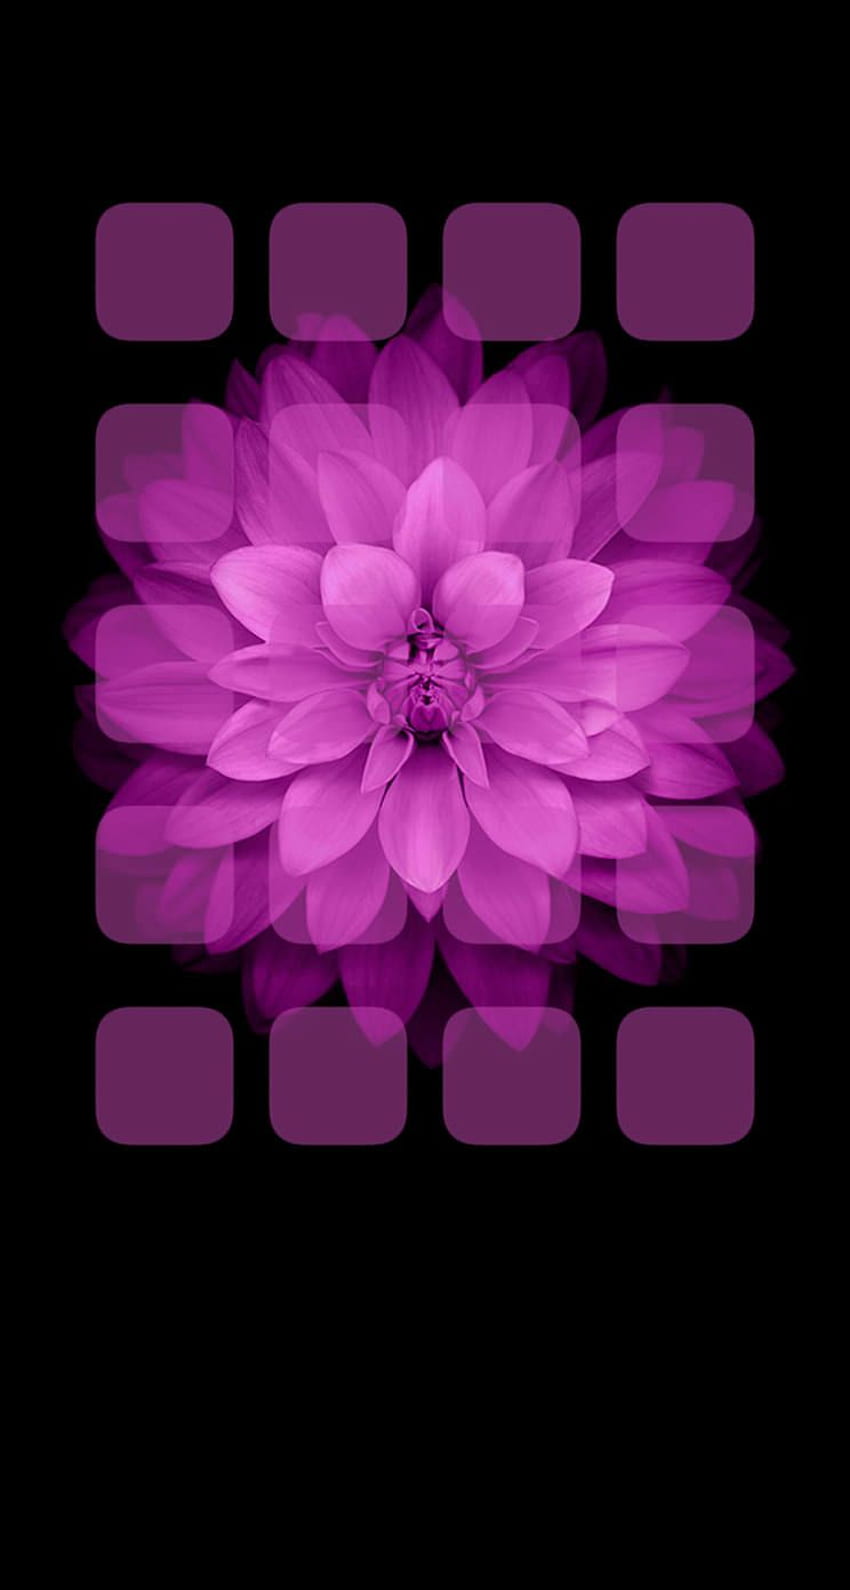 Estante flores negras moradas. .sc iPhone5s, SE fondo de pantalla del teléfono